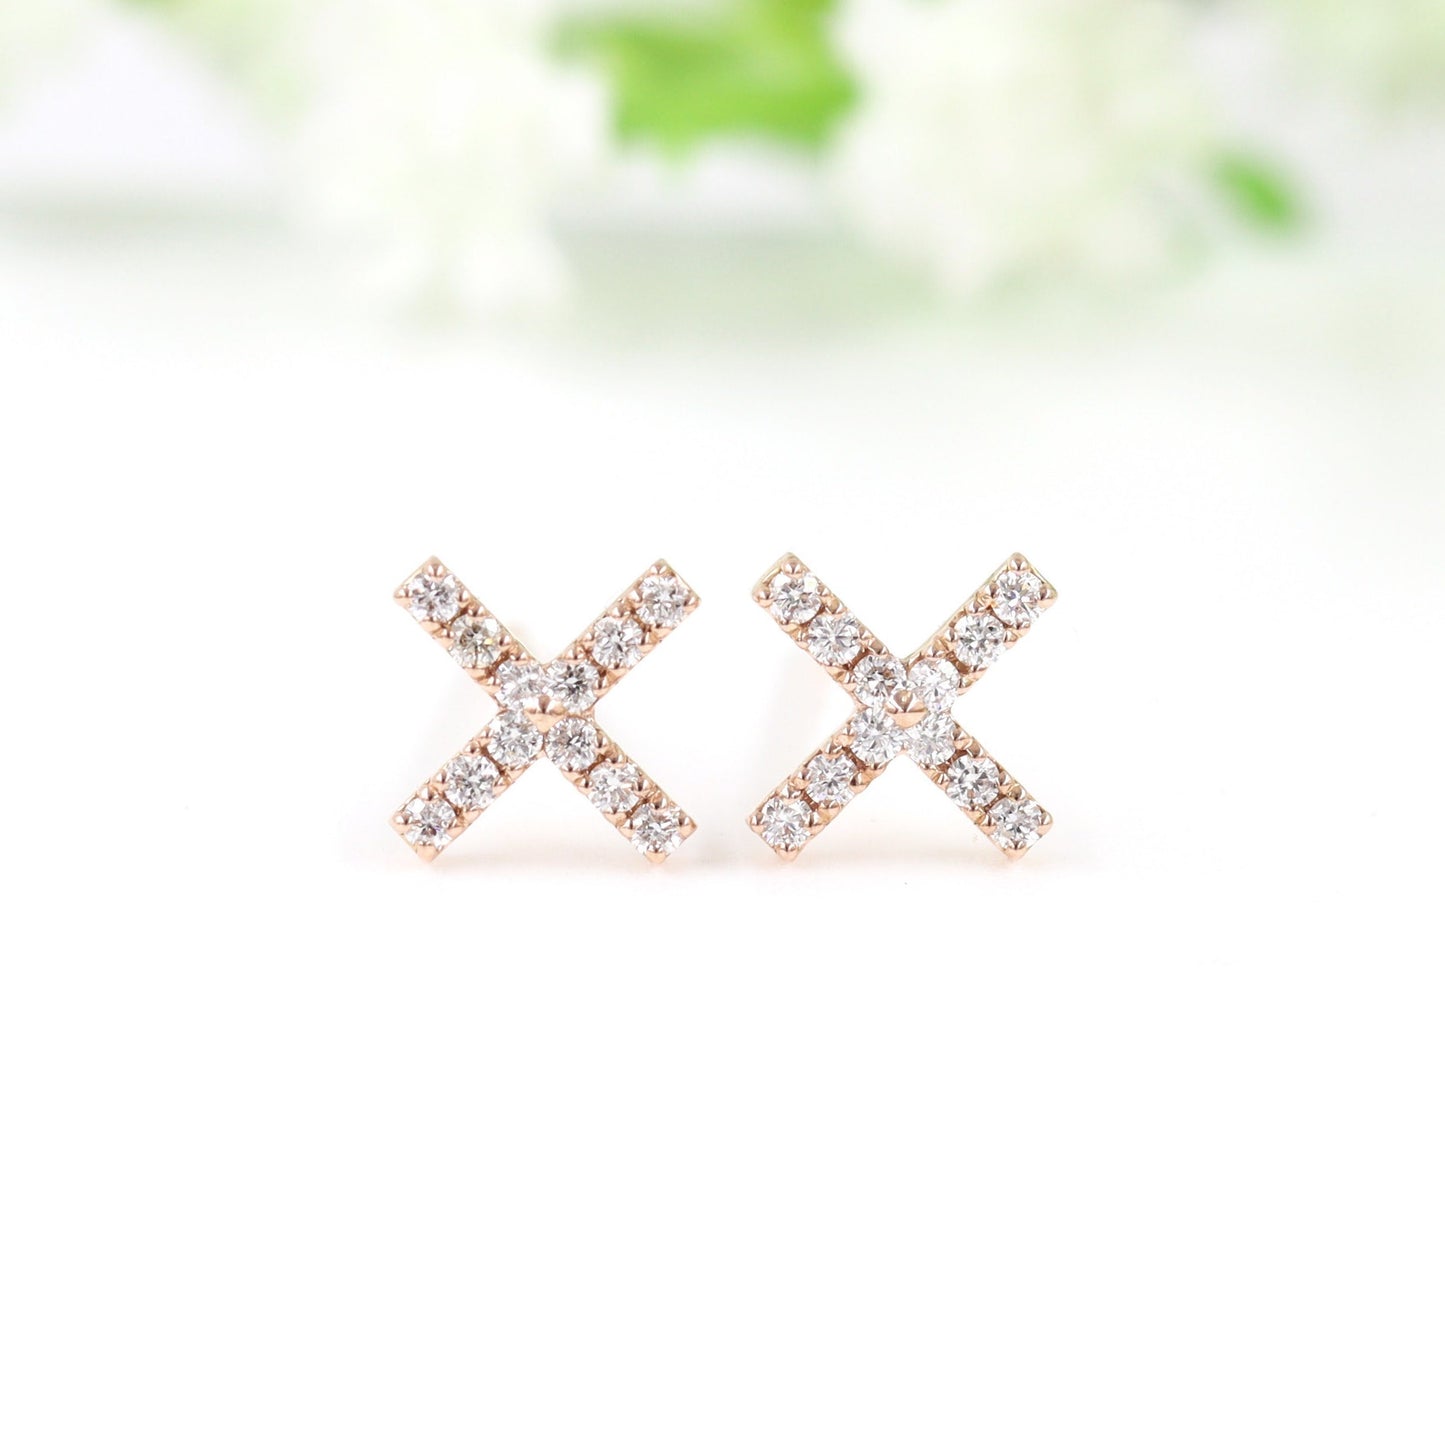 White Diamond X Earrings  / Stud Double X Earrings / 14k Dainty Earrings / Minimalist 100% Natural  Diamonds Earrings / Gifts for her